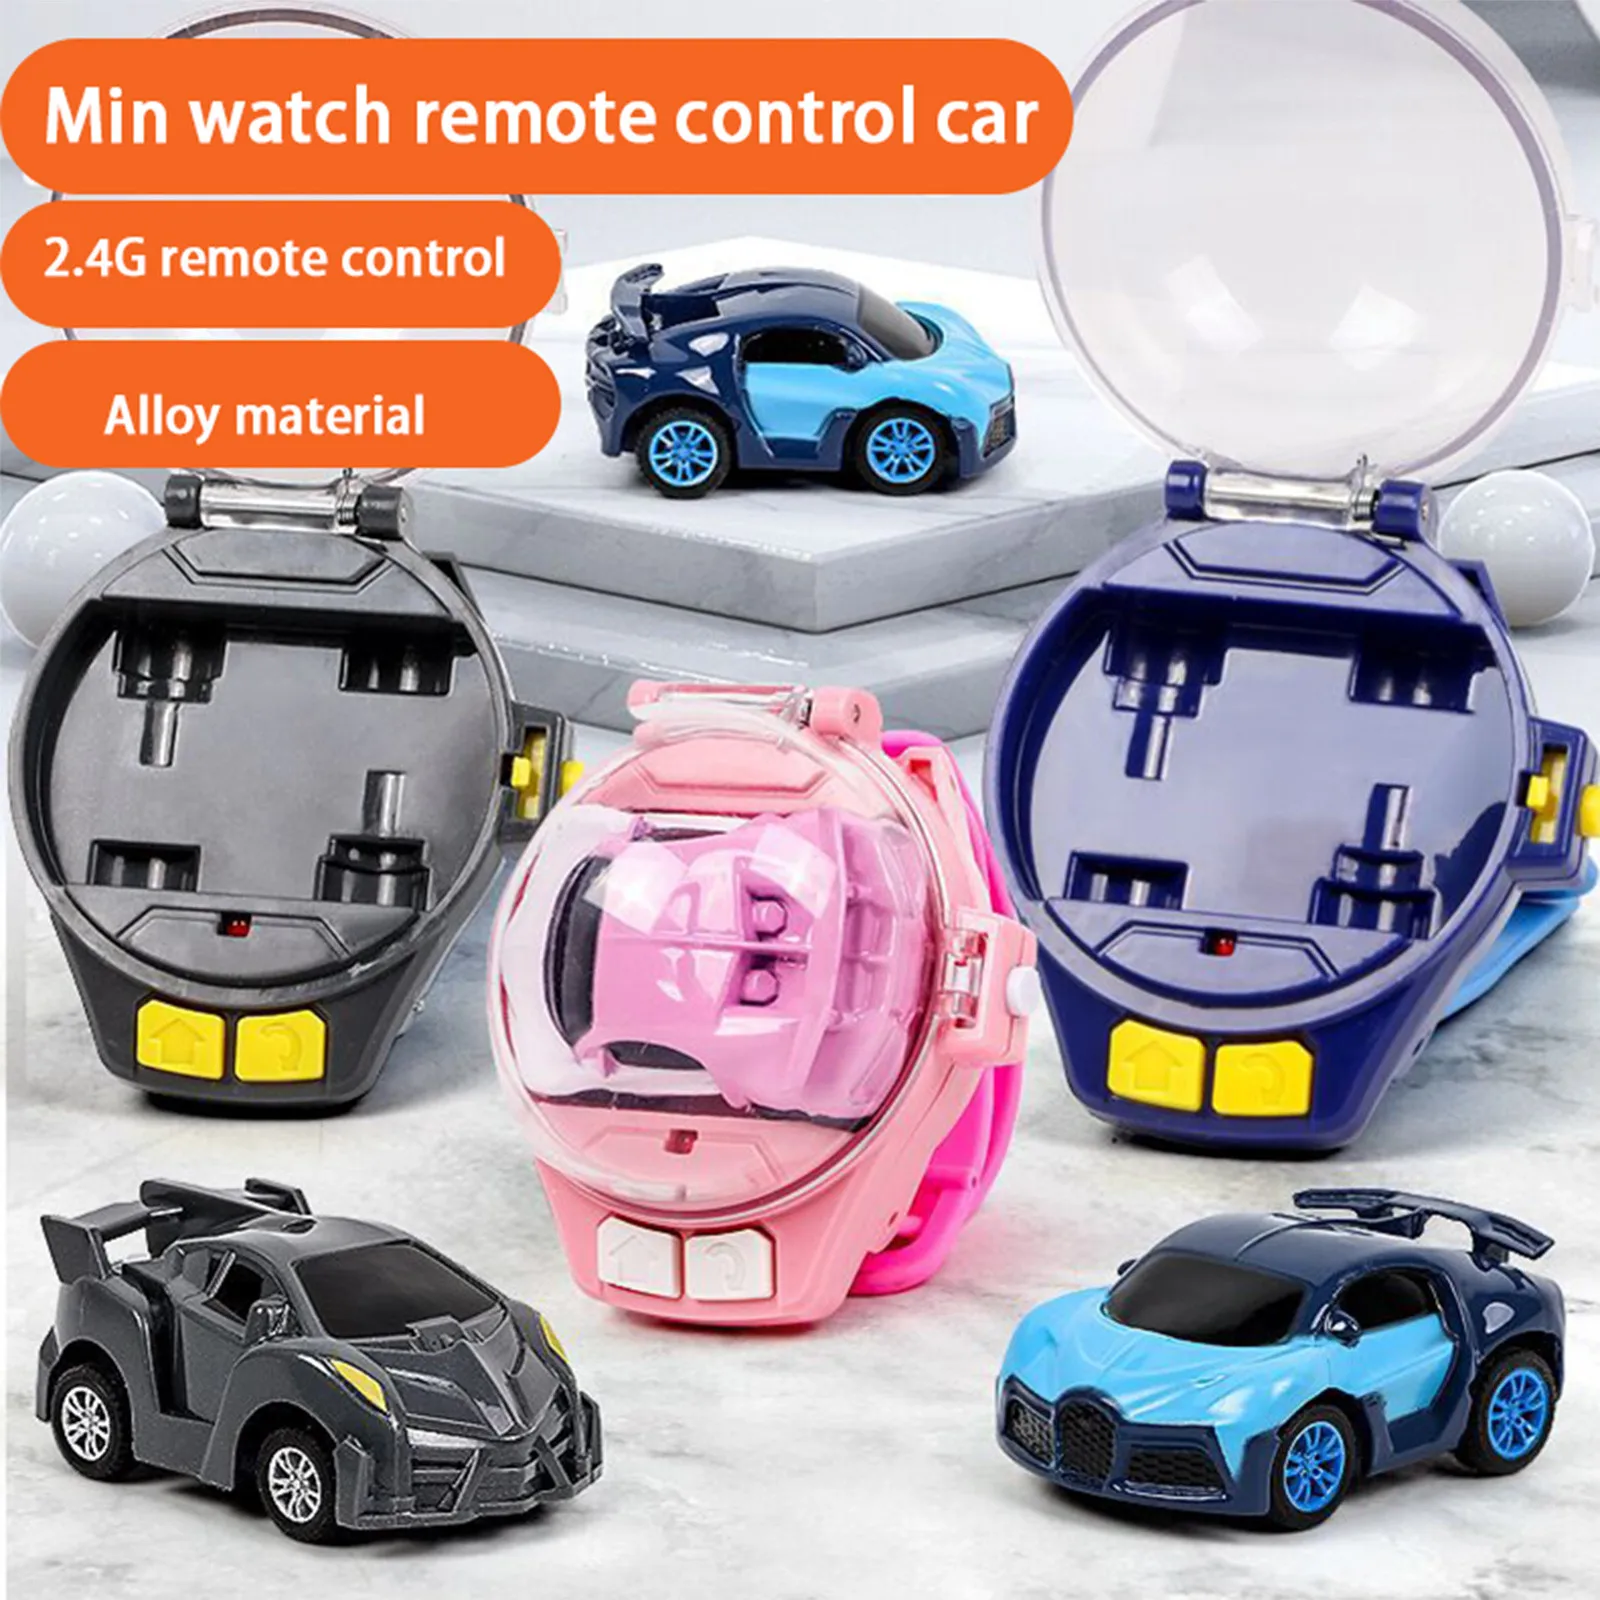 https://ae01.alicdn.com/kf/Scb97a096118d40eaba0c668f8b155b50j/Kinder-Jungen-Geschenk-Cartoon-Mini-RC-Fernbedienung-Auto-Uhr-Spielzeug-Elektrische-Handgelenk-Wiederaufladbare-Handgelenk-Racing-Autos.jpg